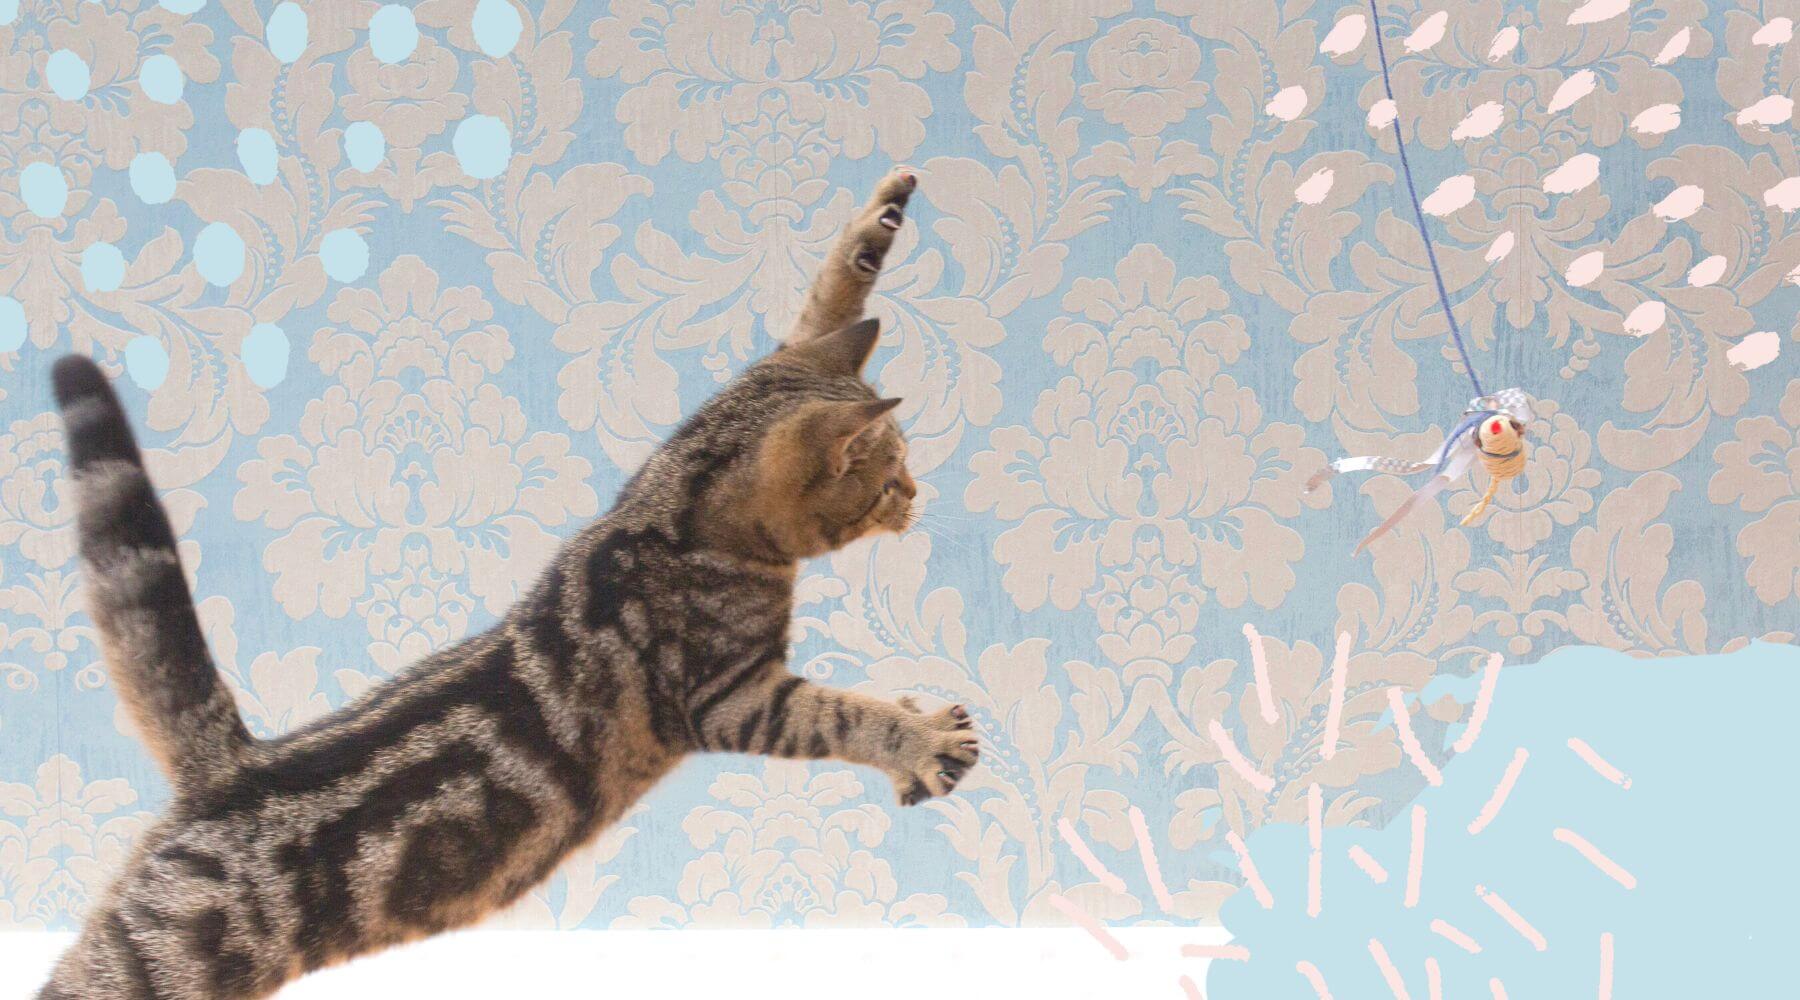 Katze springt in die Luft und versucht eine Katzenangel zu fangen.